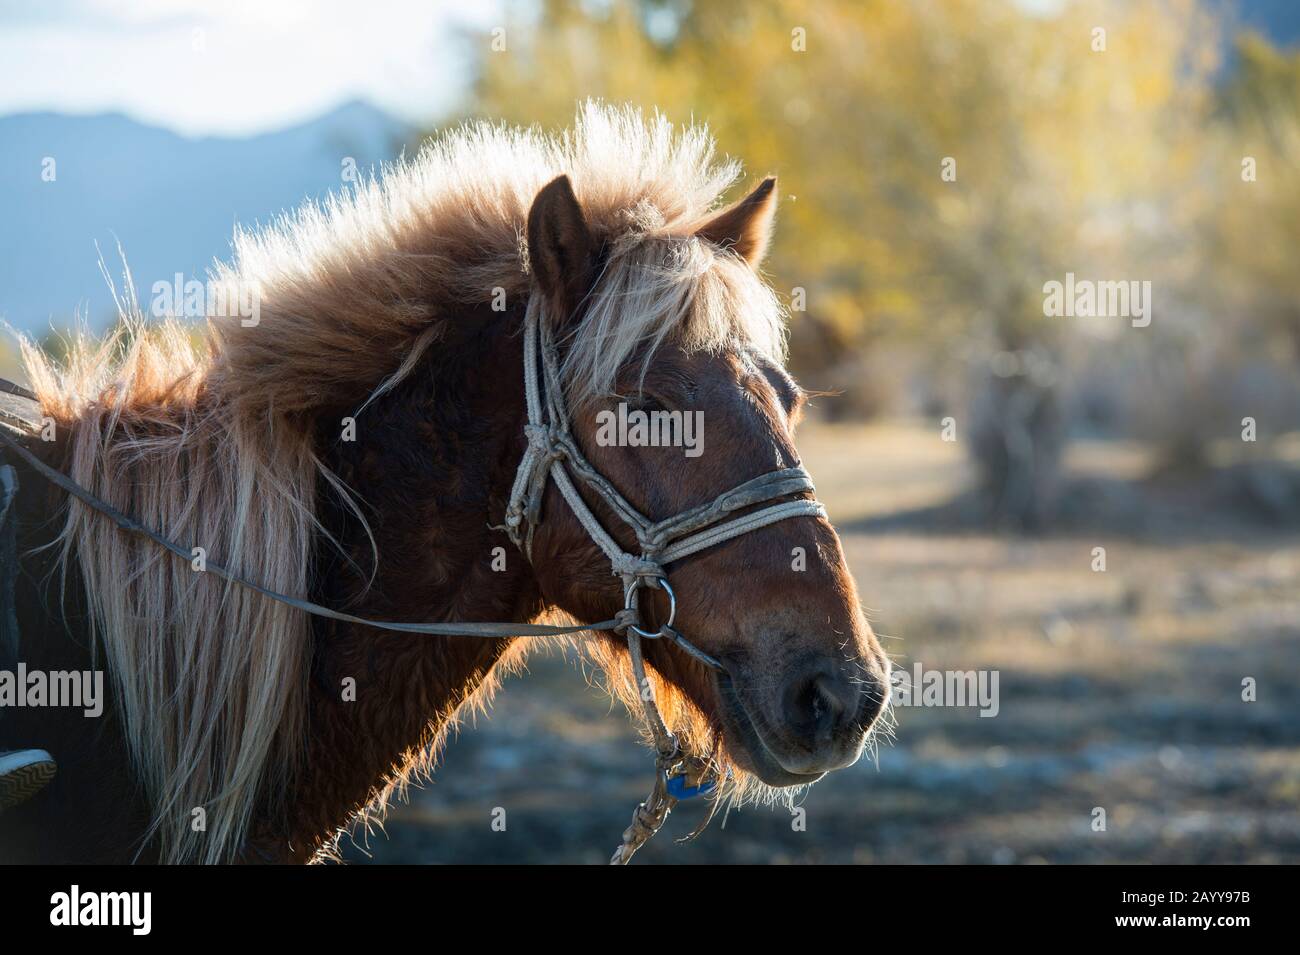 Portrait d'un cheval près de la ville d'Ulgii (Ölgii) dans la province de Bayan-Ulgii dans l'ouest de la Mongolie. Banque D'Images